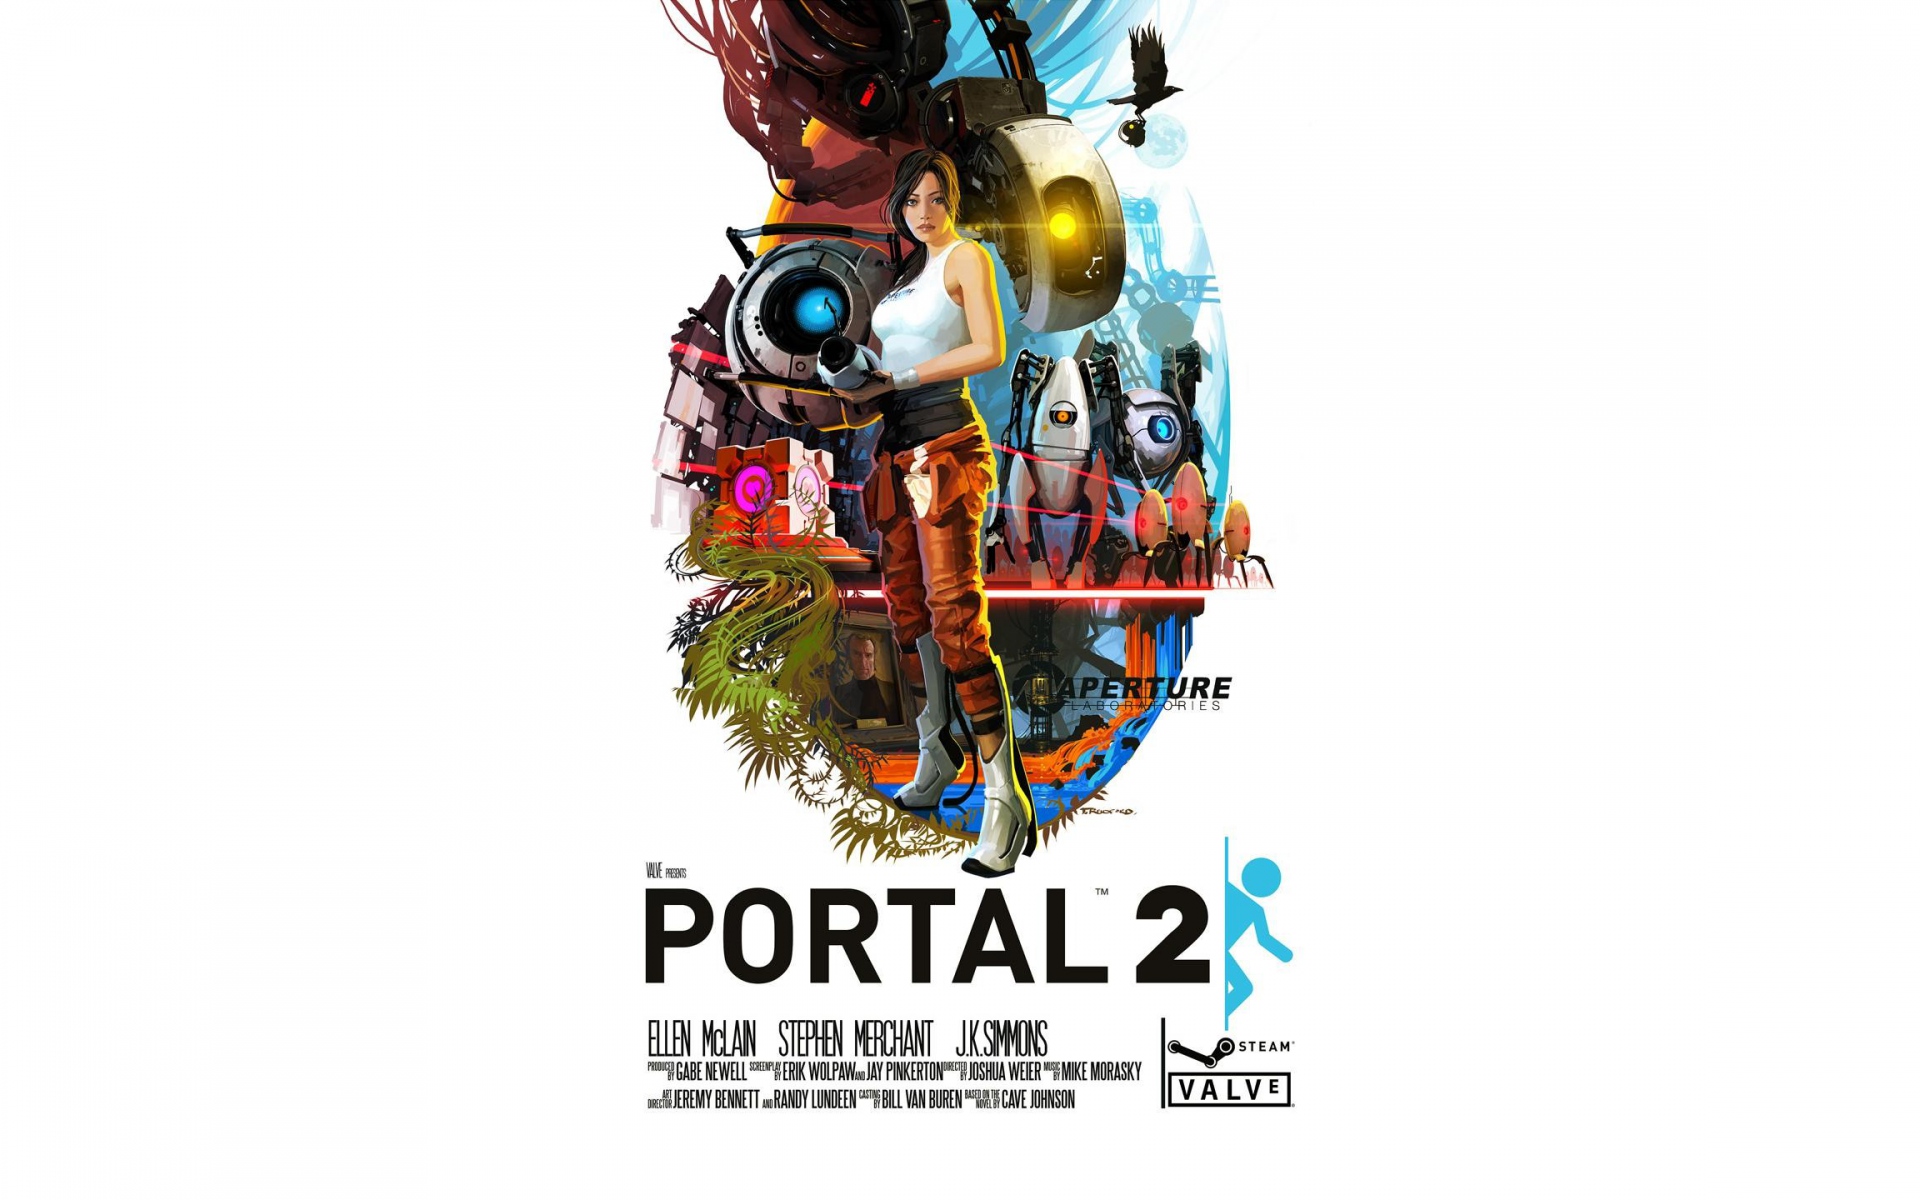 Картинки Портал, портал 2, игра, искусство фото и обои на рабочий стол